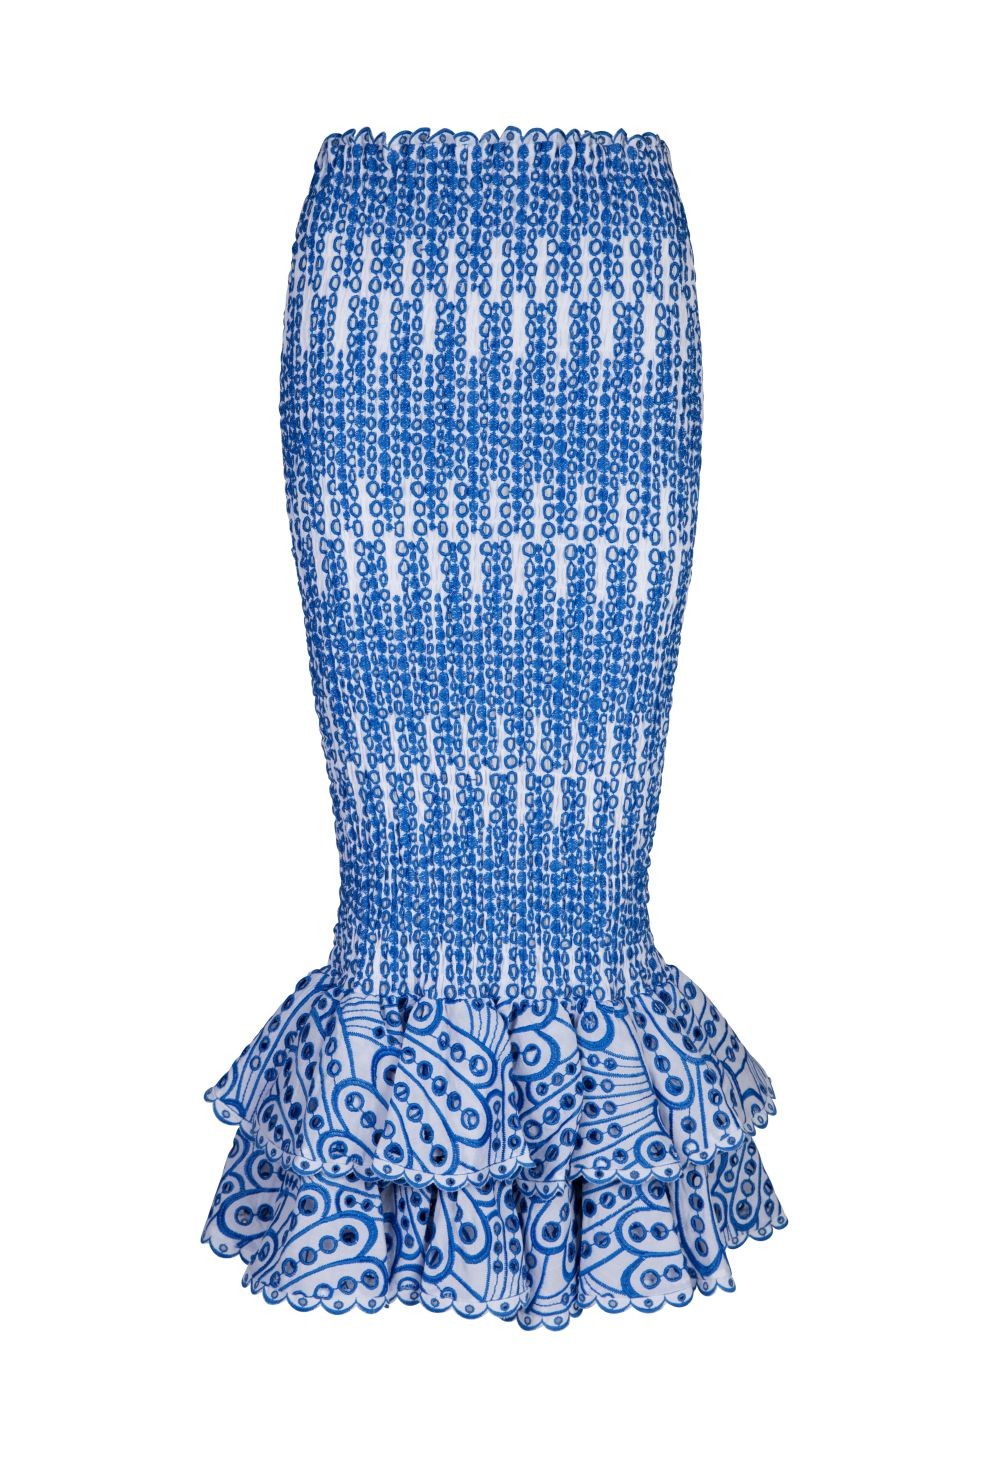 Charo Ruiz Liliana Long Skirt - Premium long skirt from Marina St Barth - Just $645! Shop now at Marina St Barth